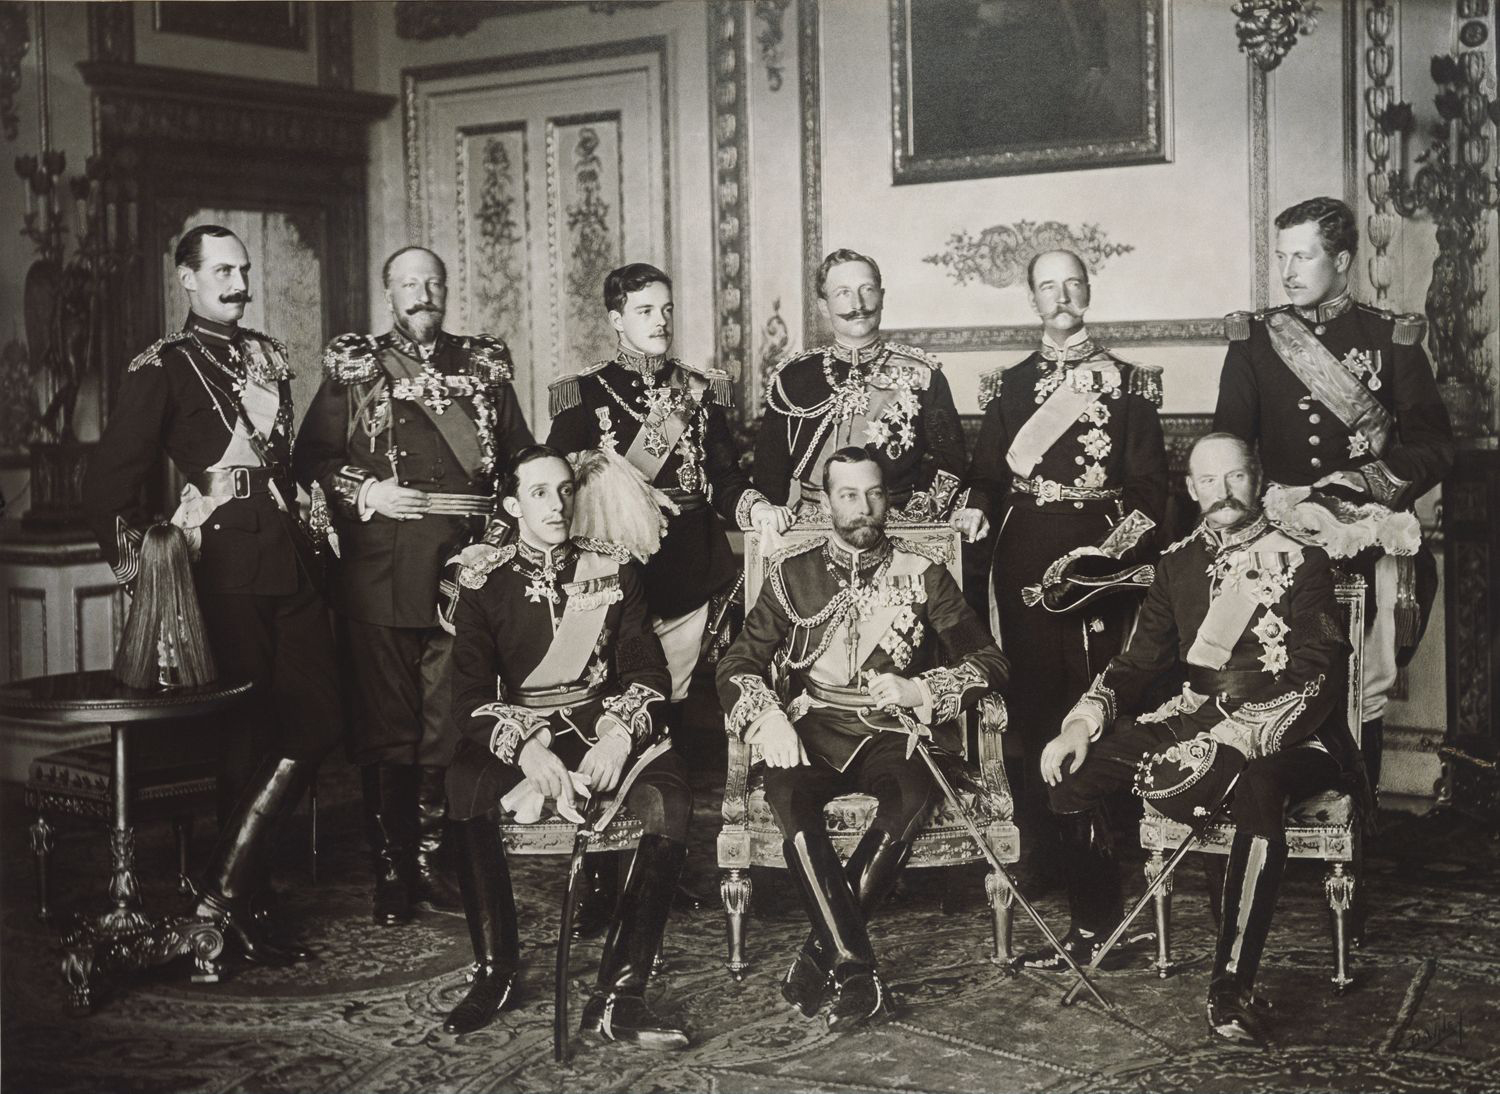 Nine European kings in one photo, May 1910